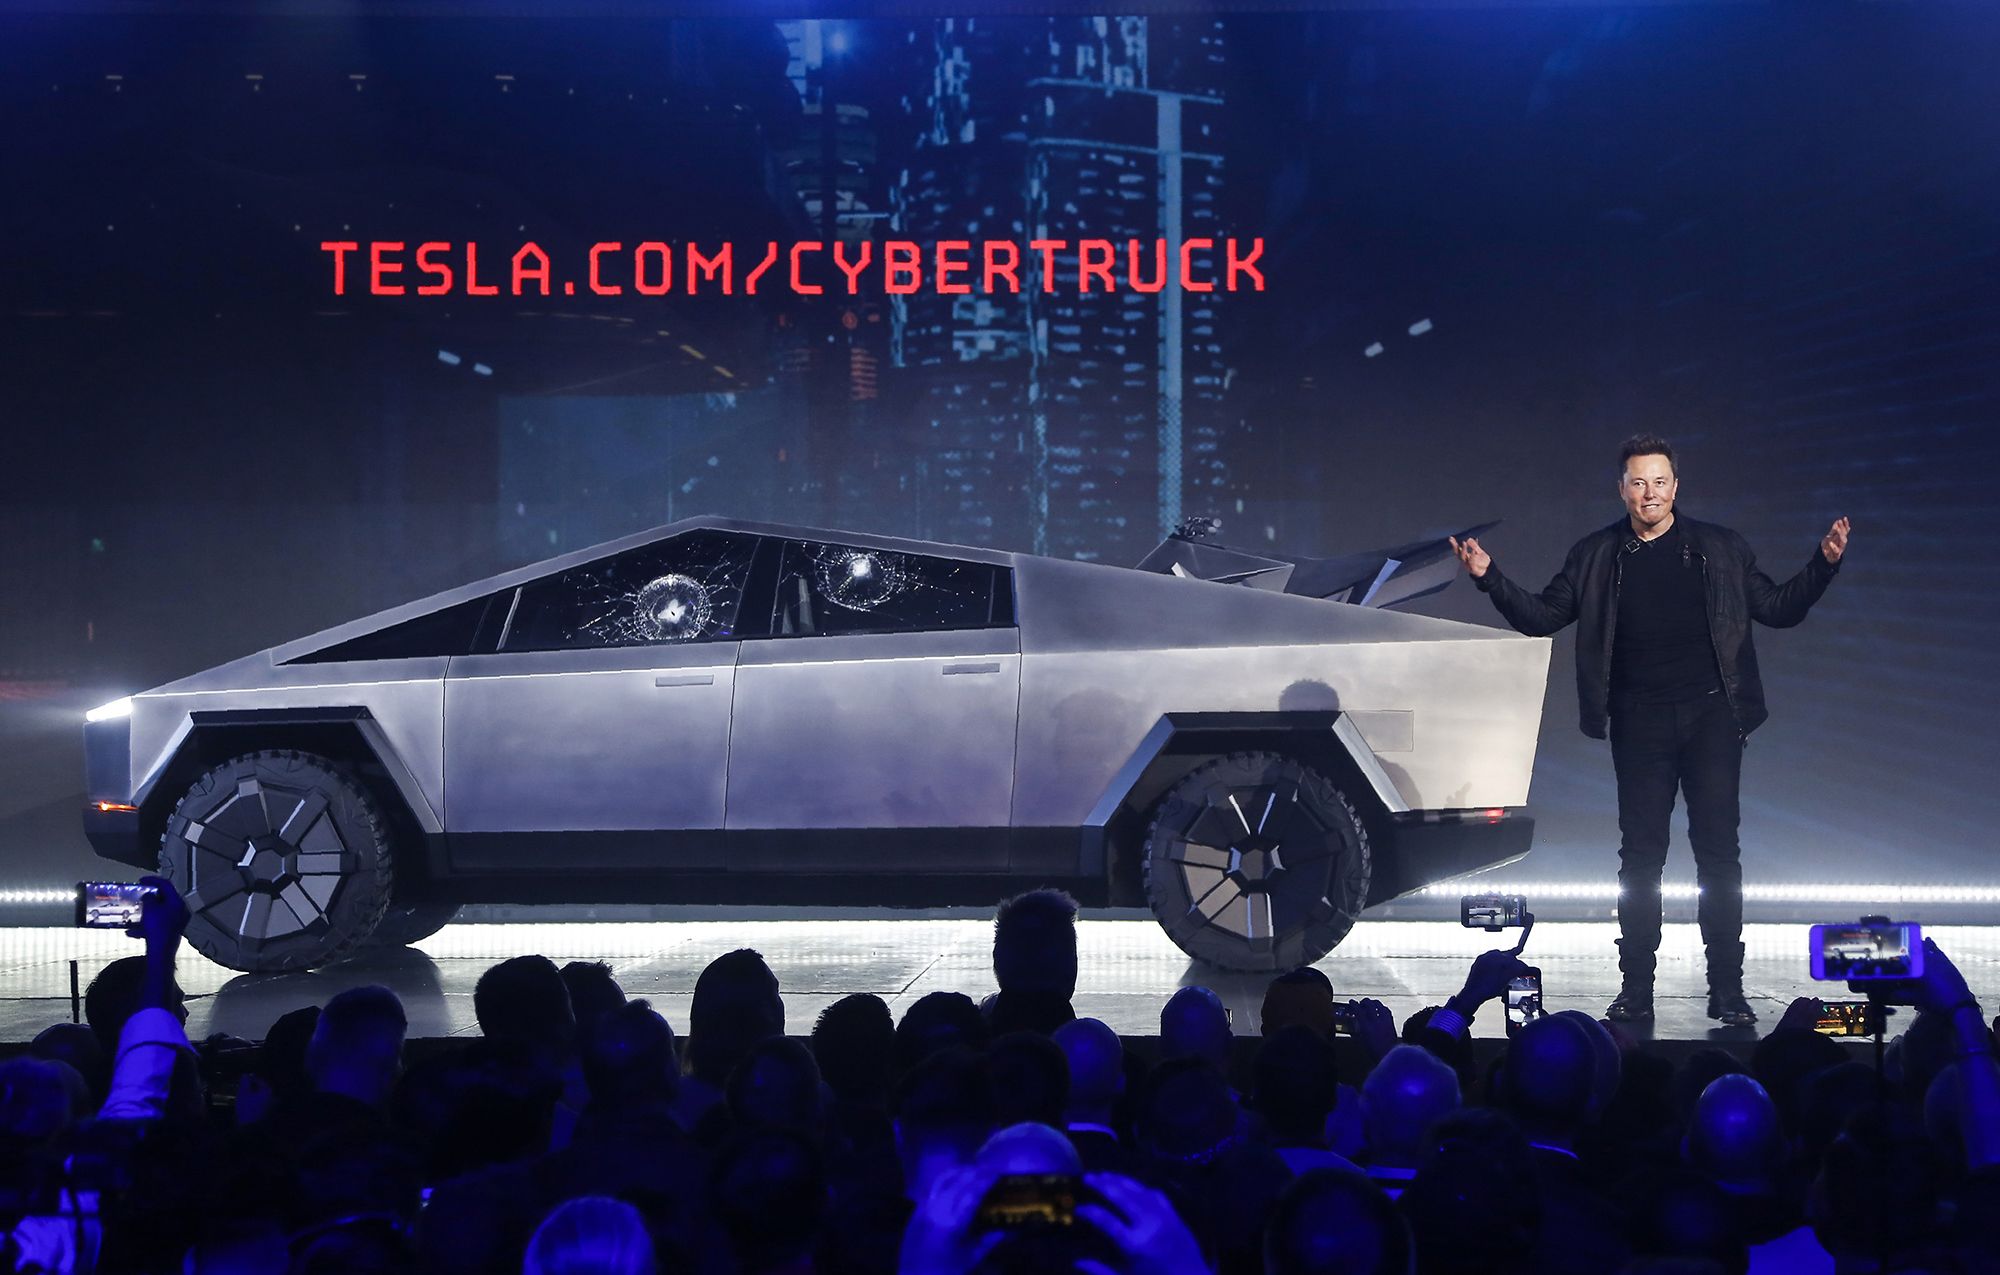 I Identify As A Tesla sticker  Car & Truck Waterproof Window